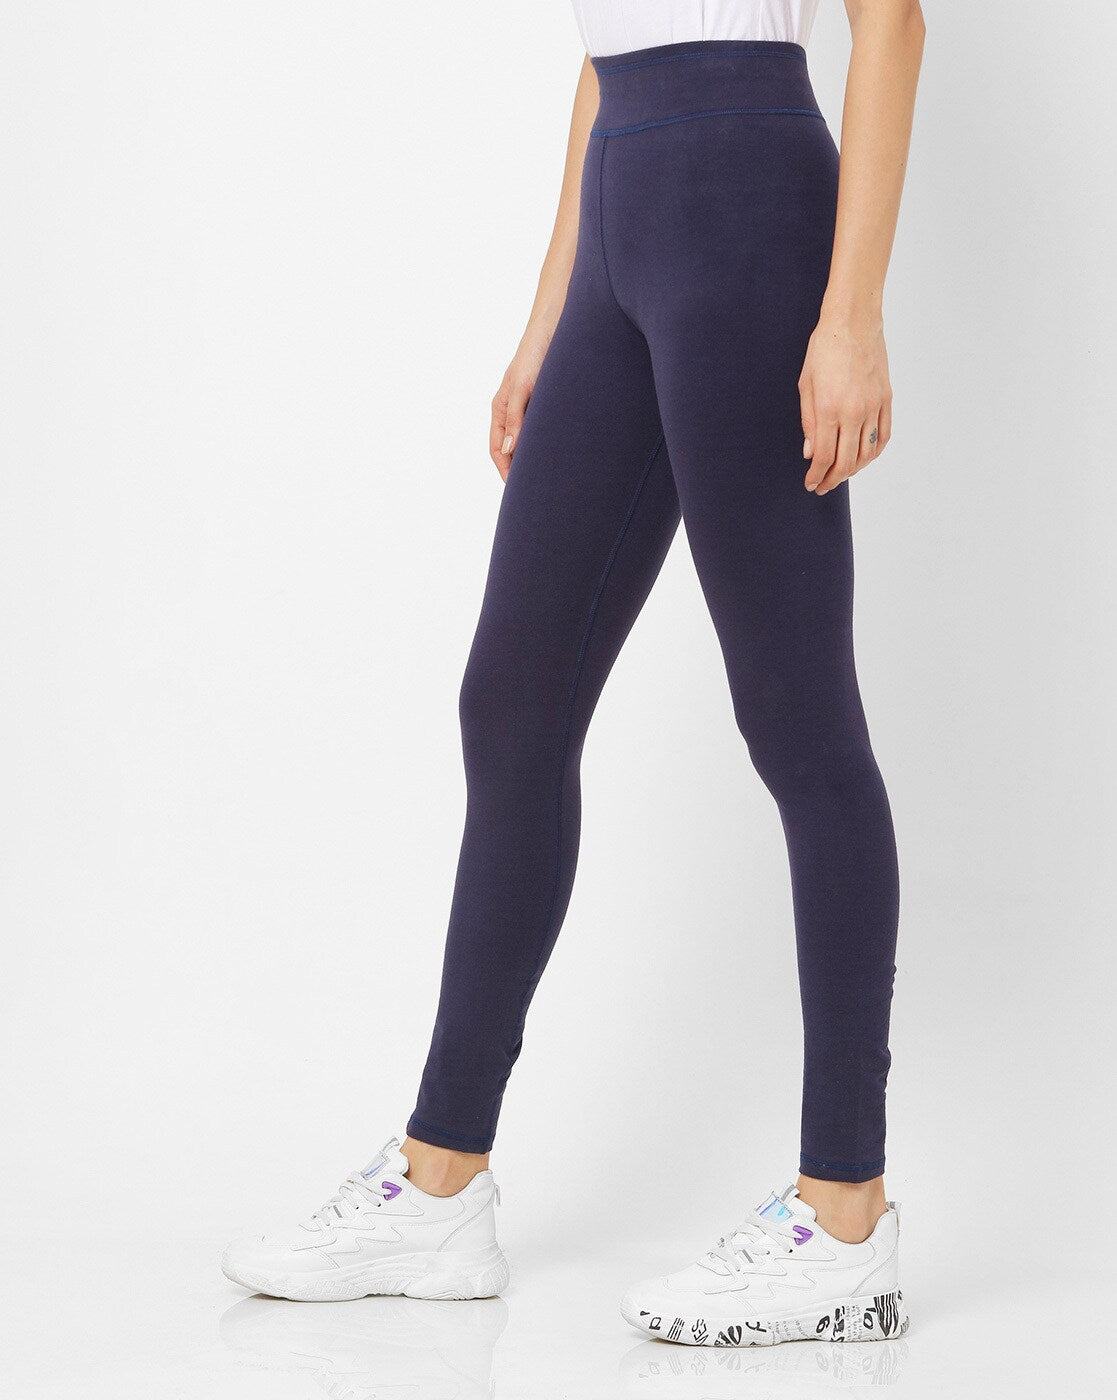 Clothing - adidas by Stella McCartney 7/8 Yoga Leggings - Grey | adidas  South Africa